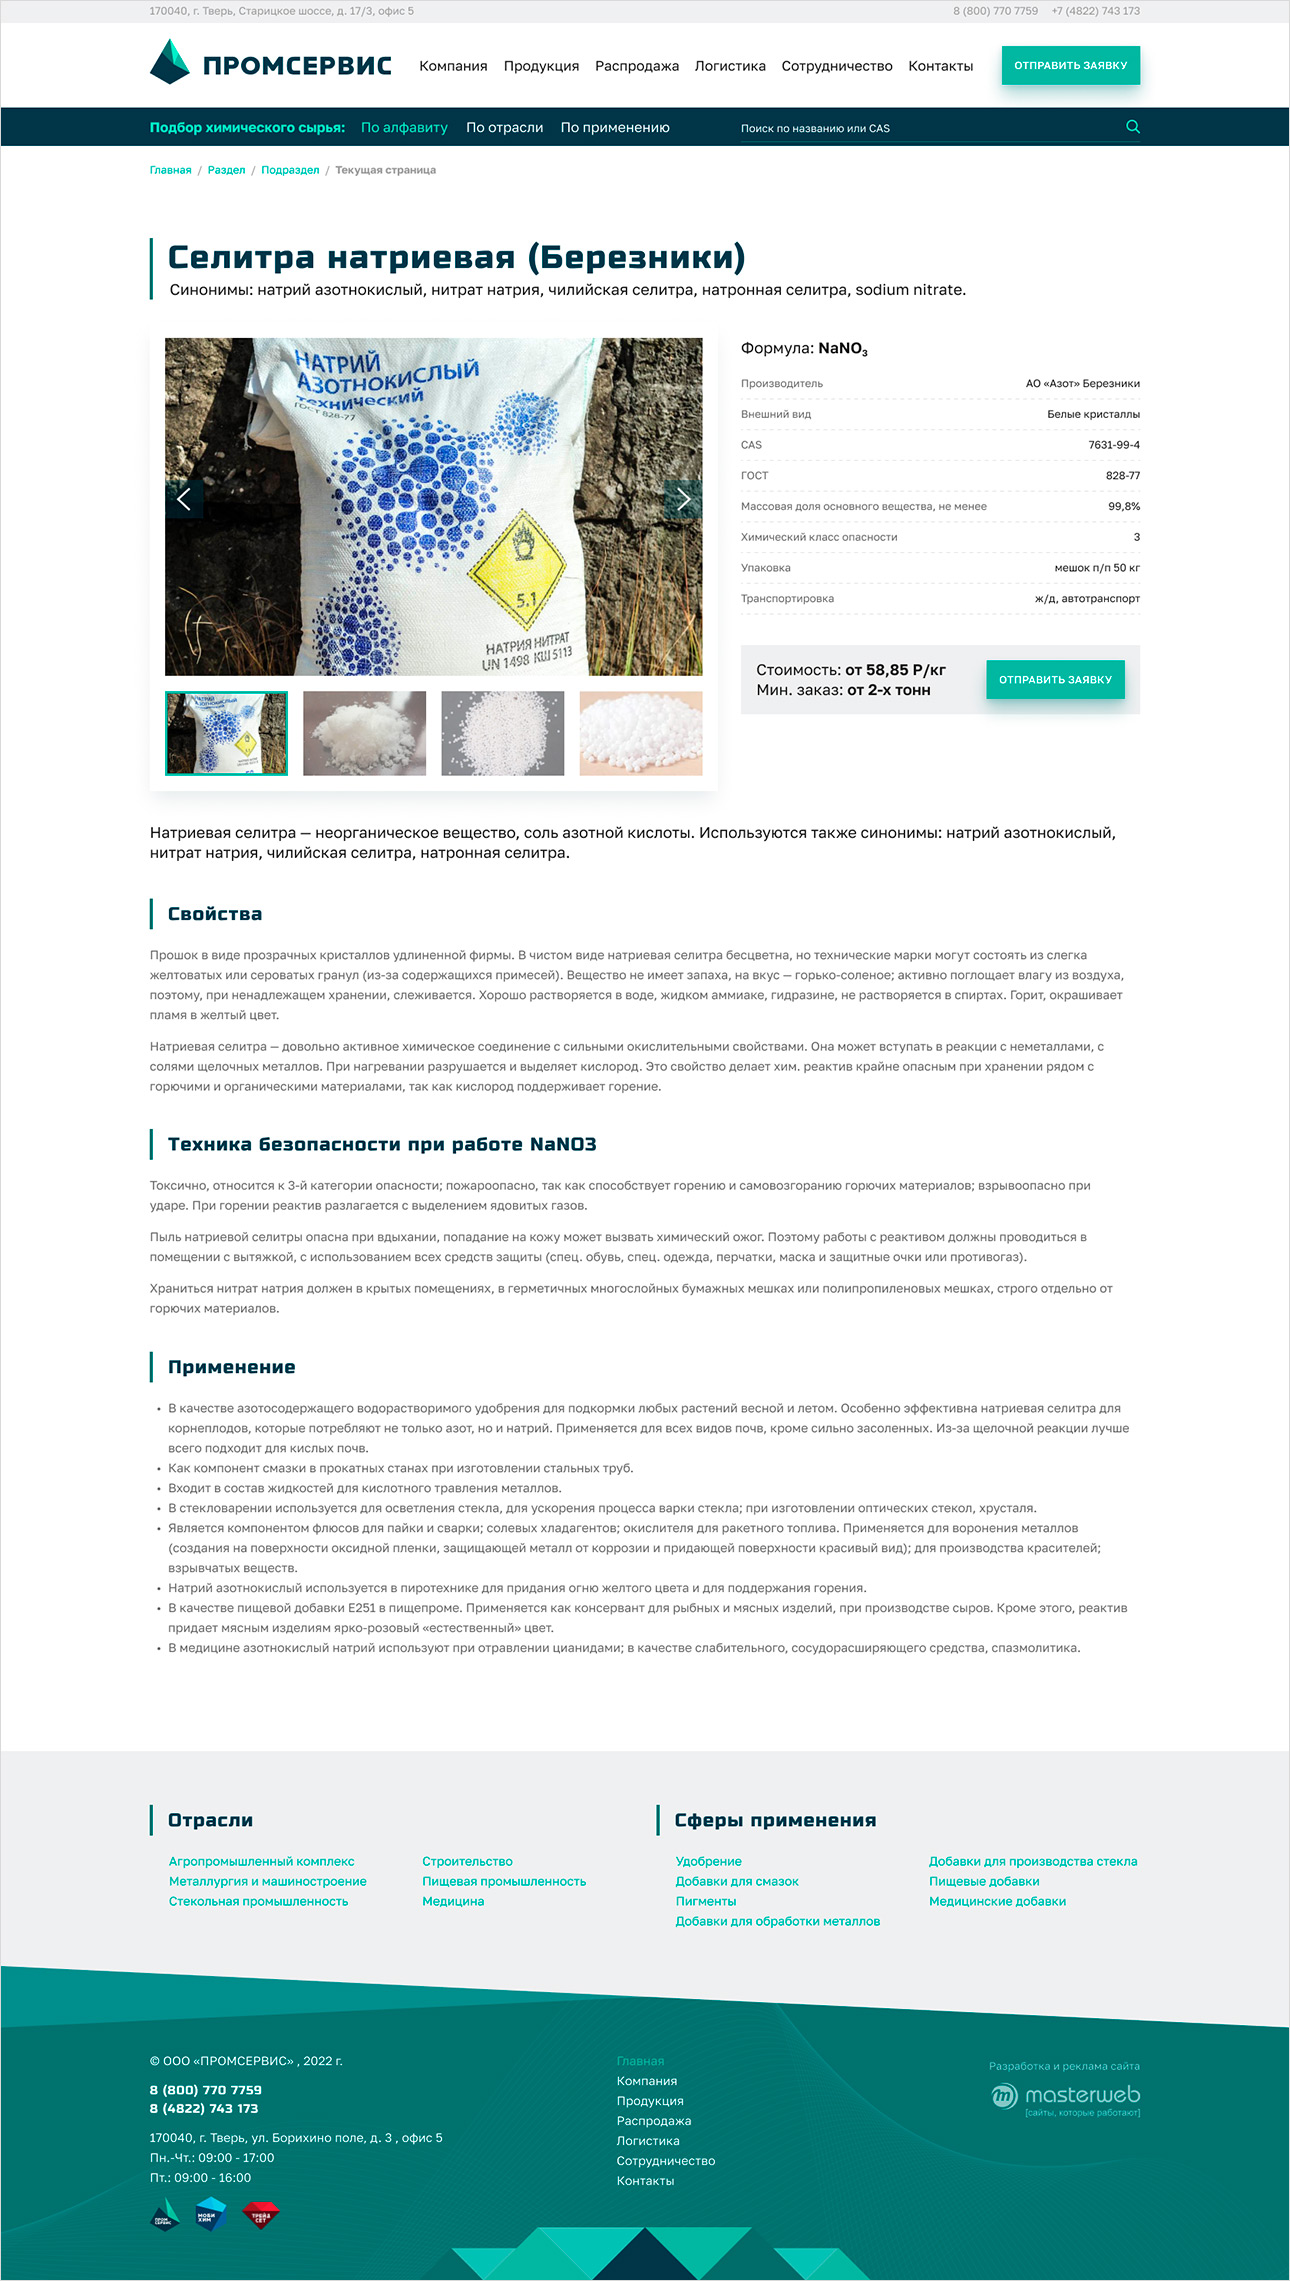 Разработка и реклама сайта поставщика химического сырья — фото-560_3